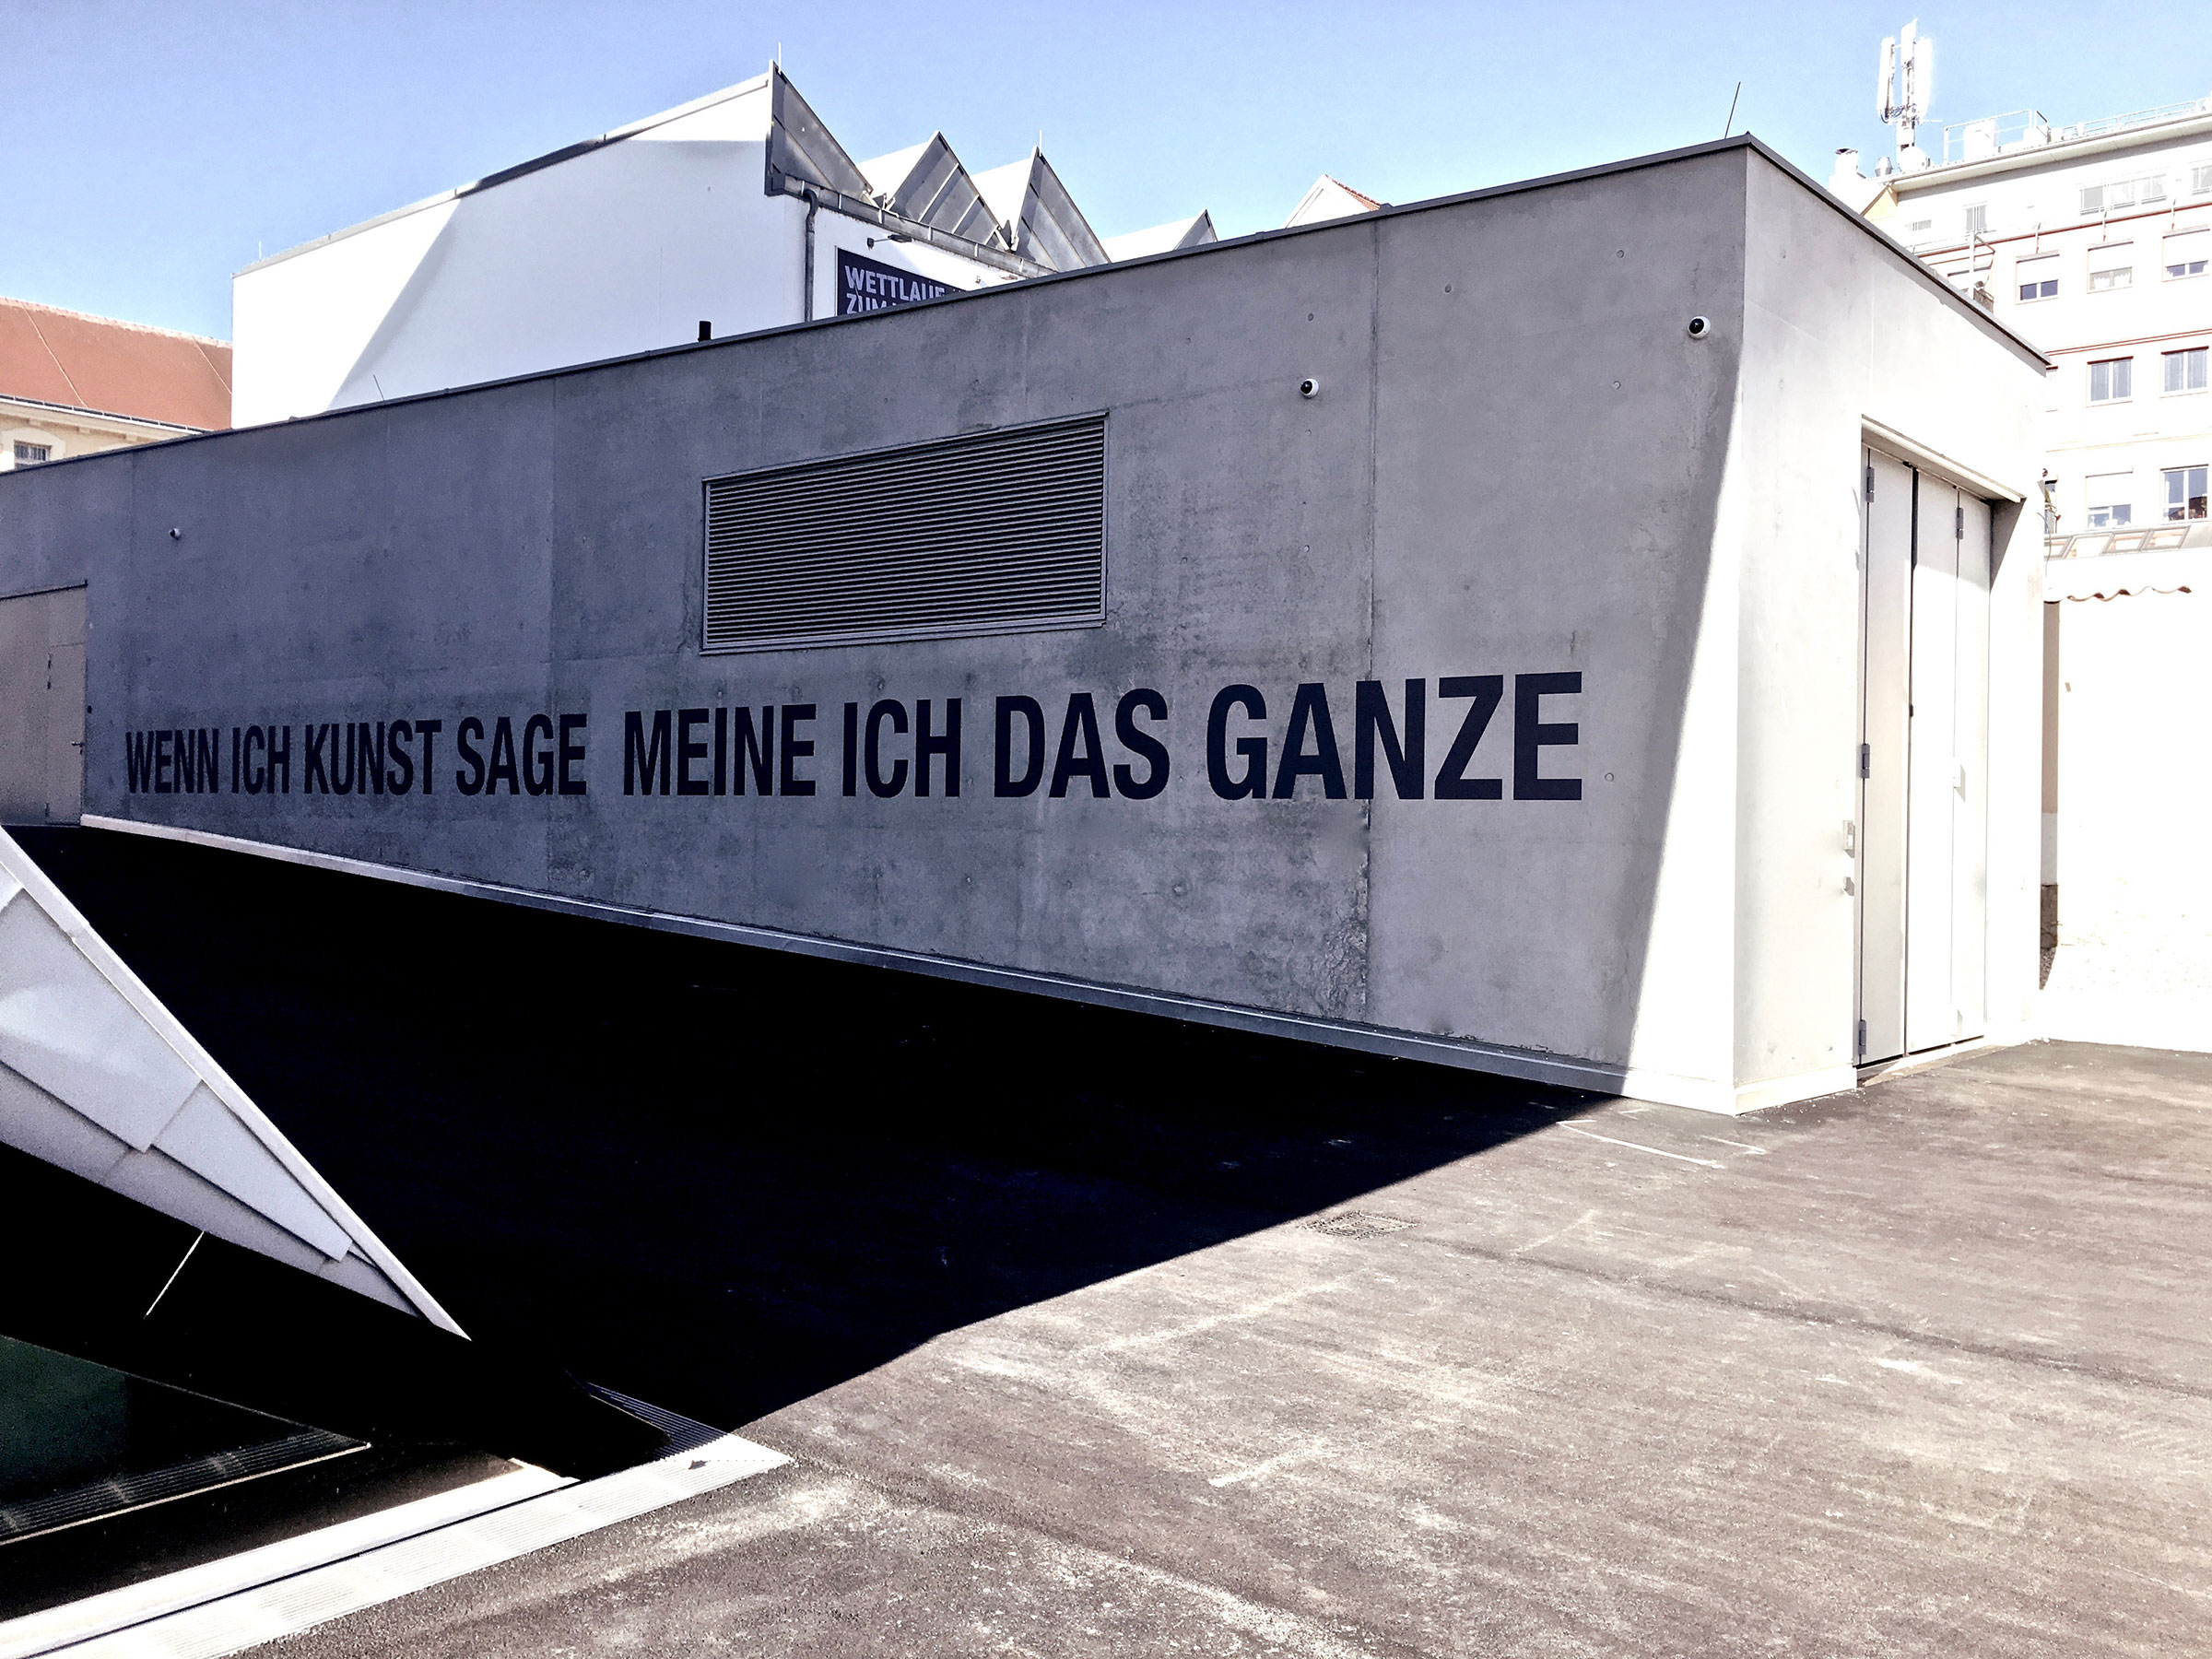 Textinstallation<br>2019, Landesgalerie Niederösterreich / State Gallery of Lower Austria